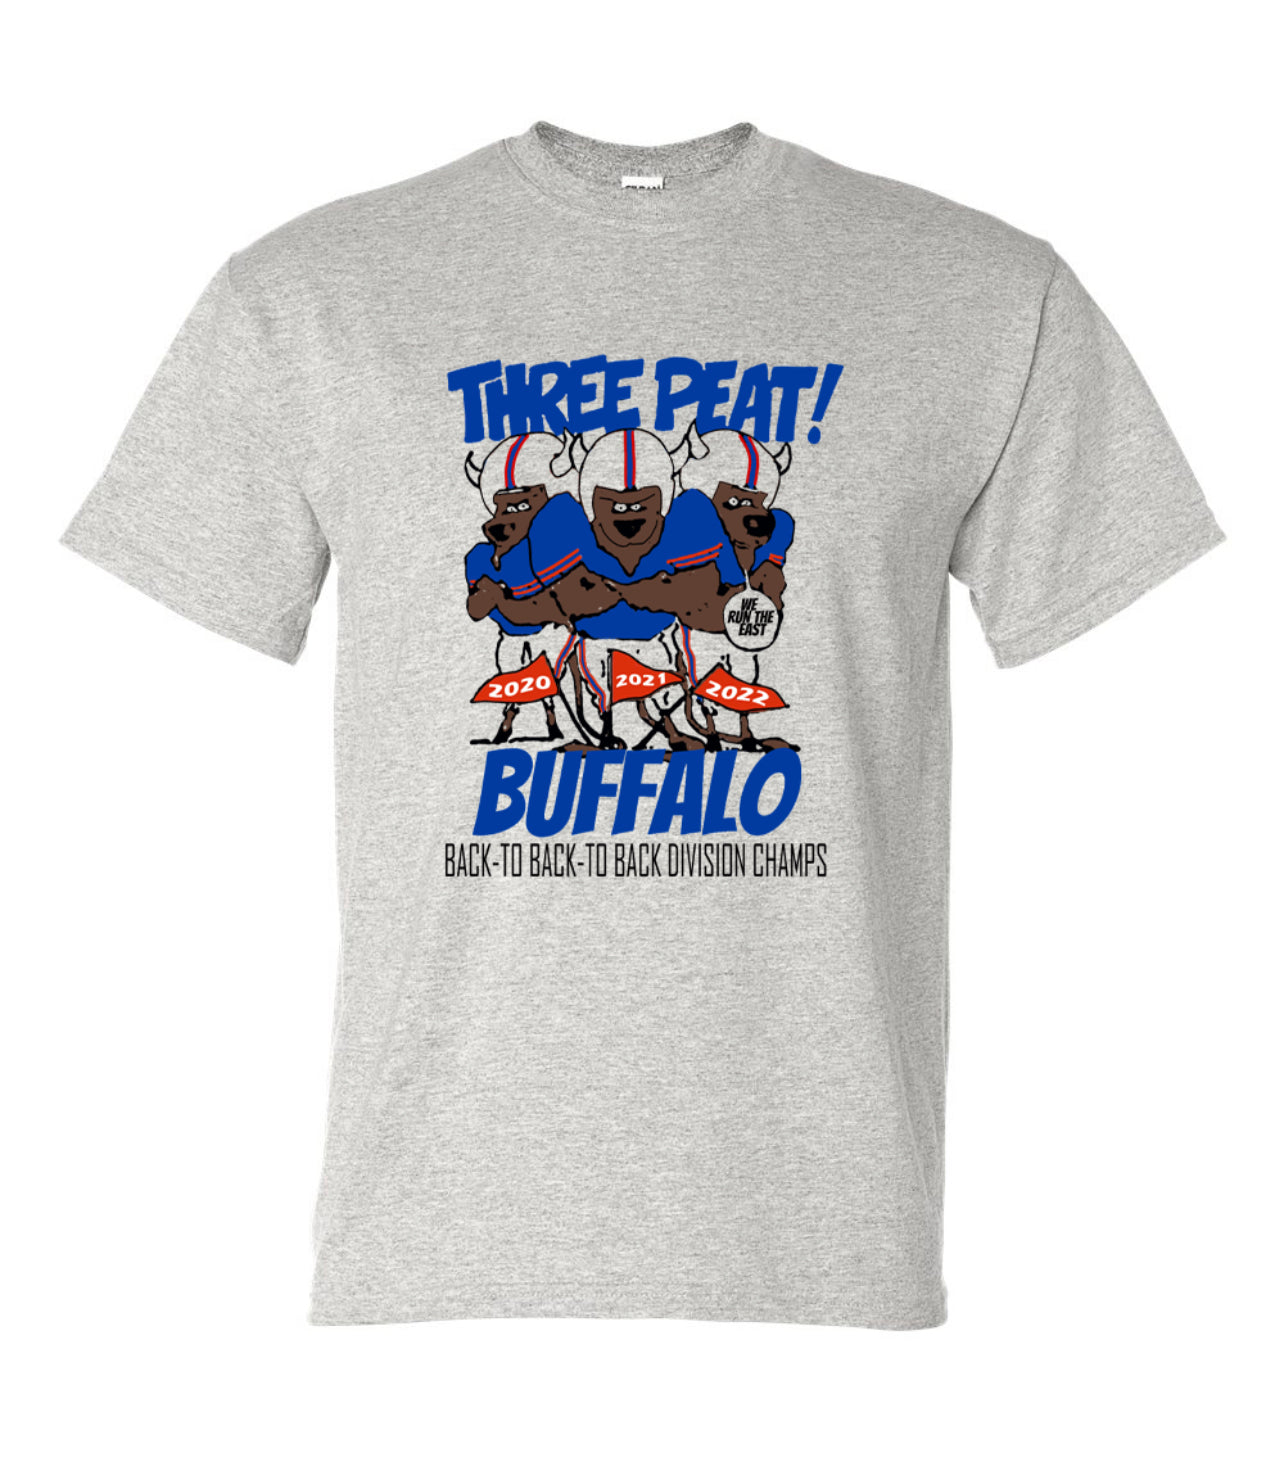 Three Peat Championship Tee, a Buffalo Three Peat Tee, Buffalo Three Peat